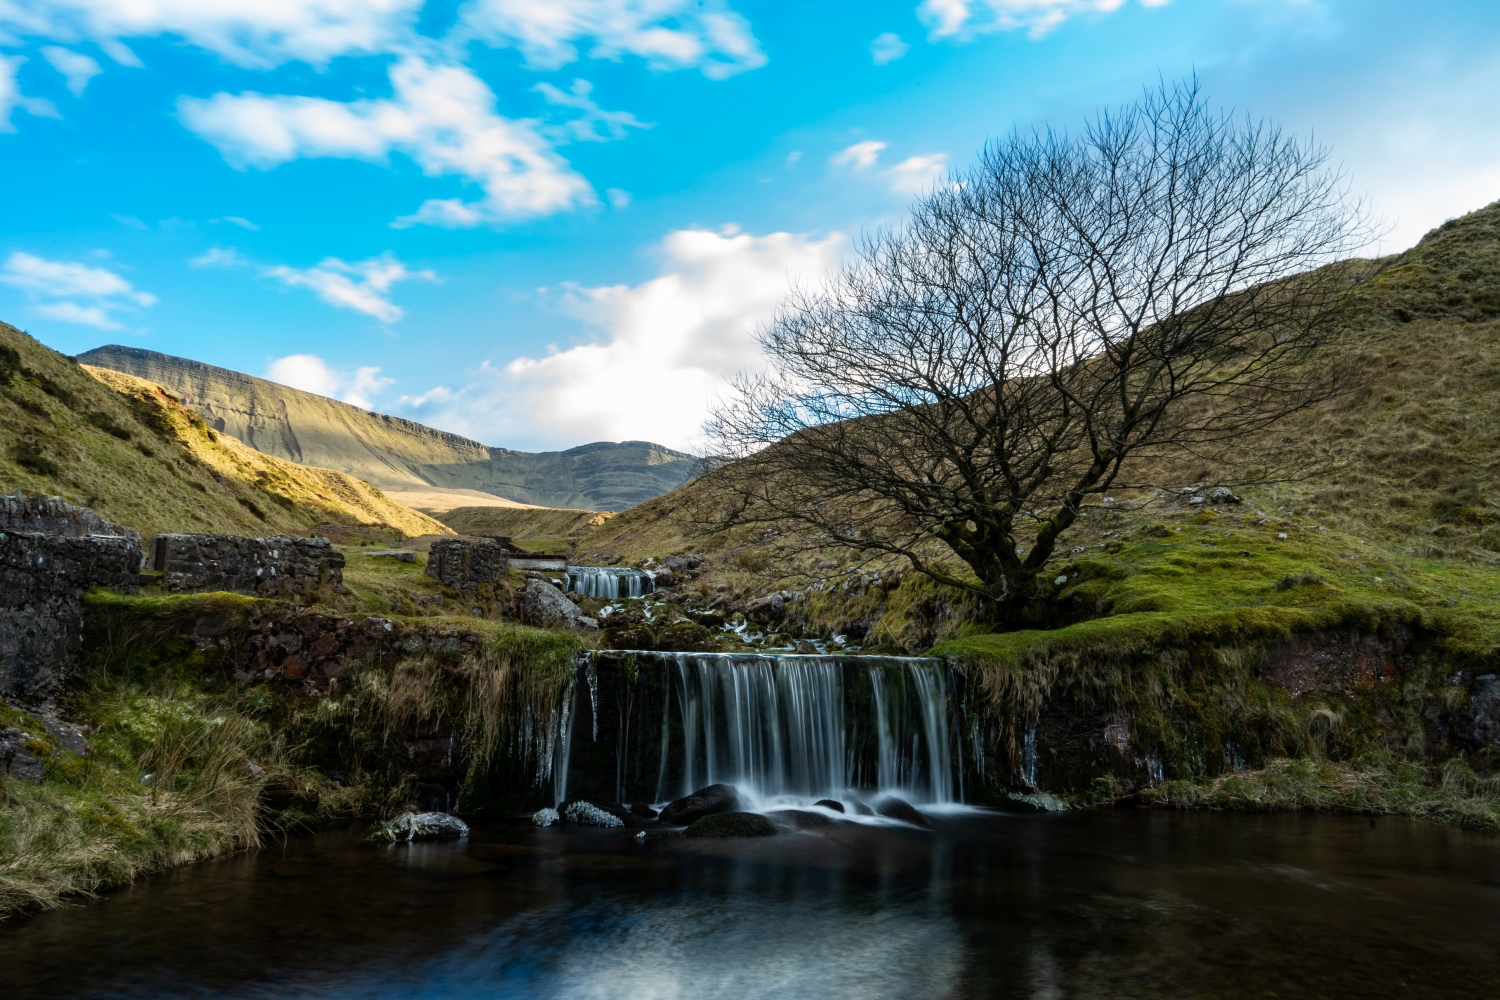 Two waterfalls across stoney landscape - Llyn Y Fan, Carmarthen Fan